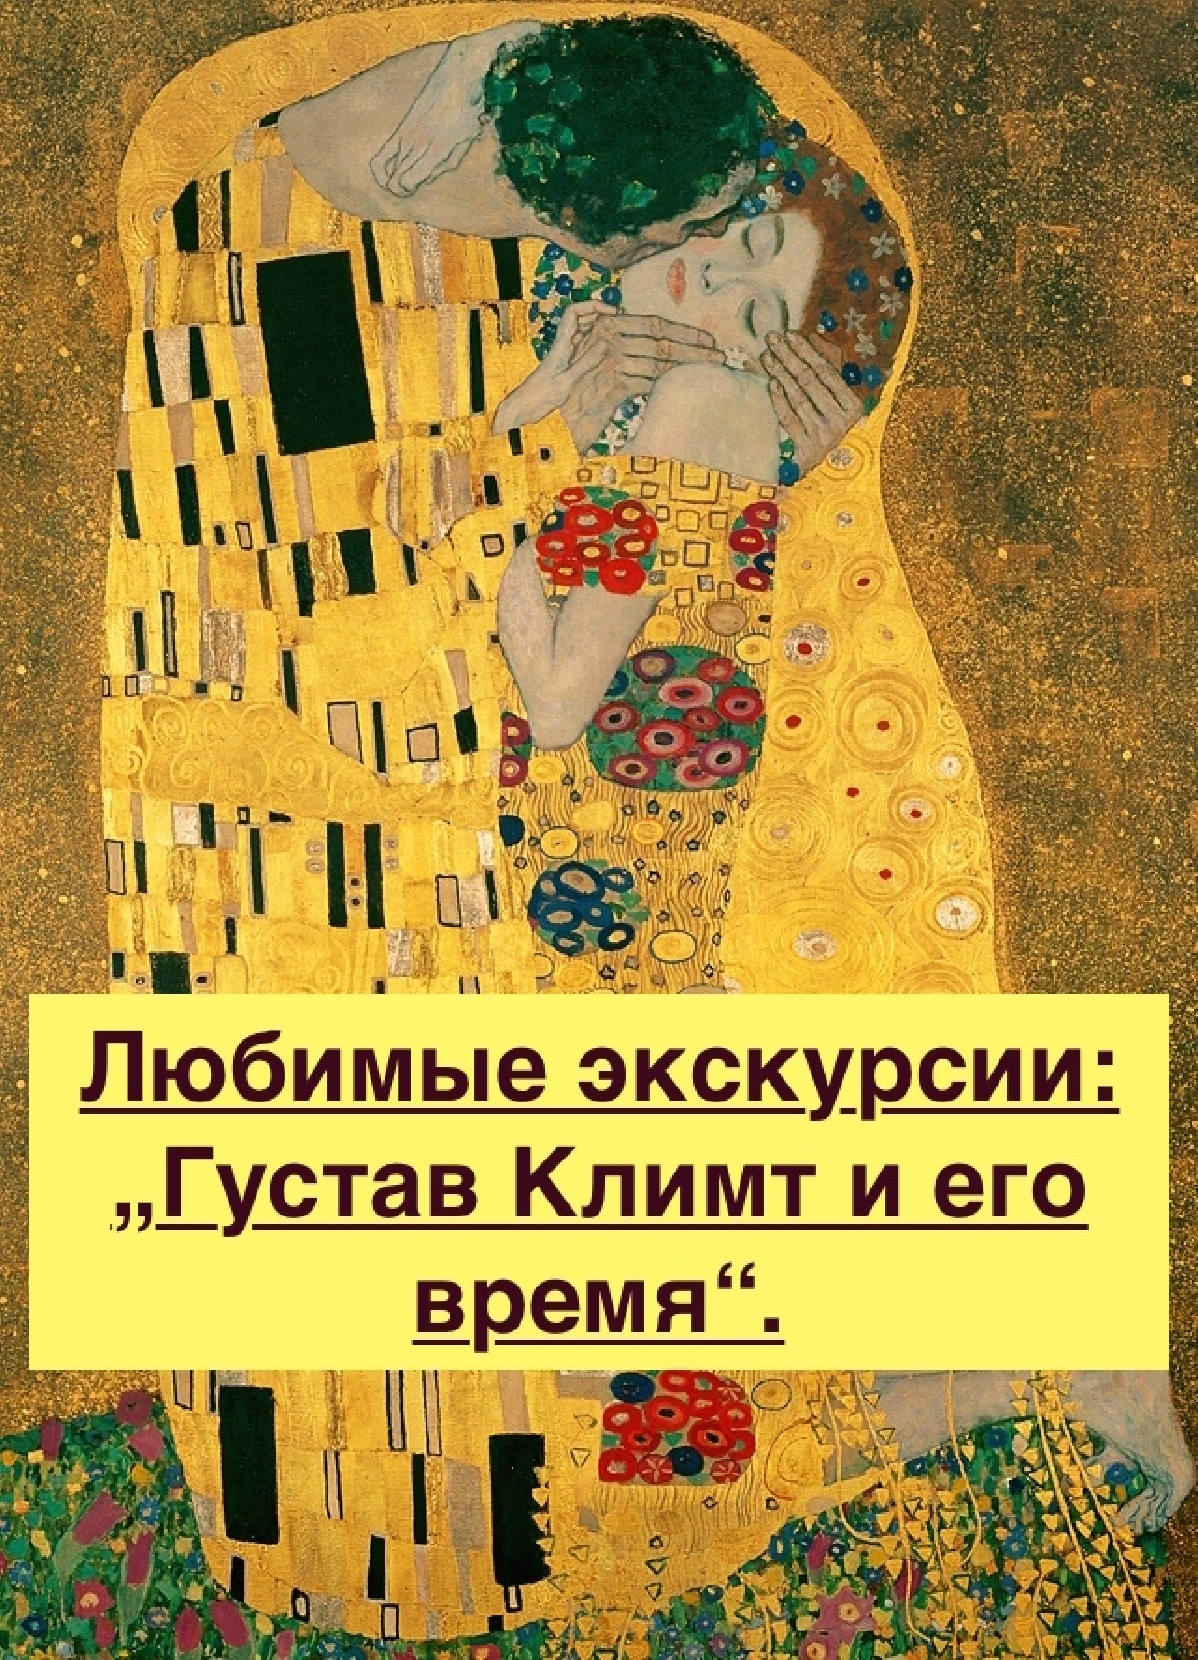 Густав Климт и его эпоха